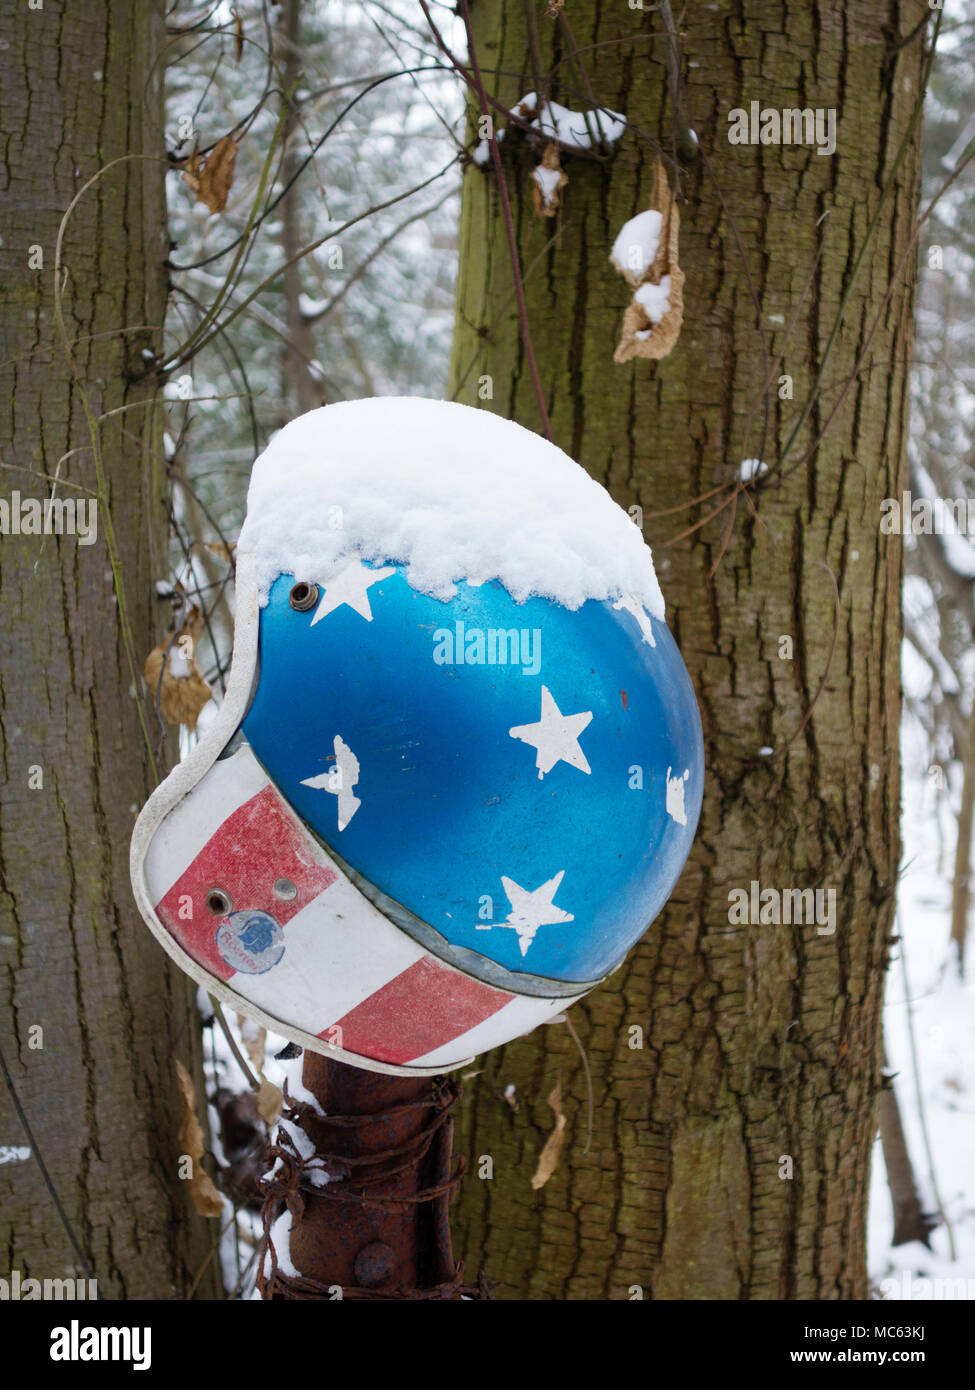 Football Helm in Wald, abgedeckt im Schnee Stockfoto